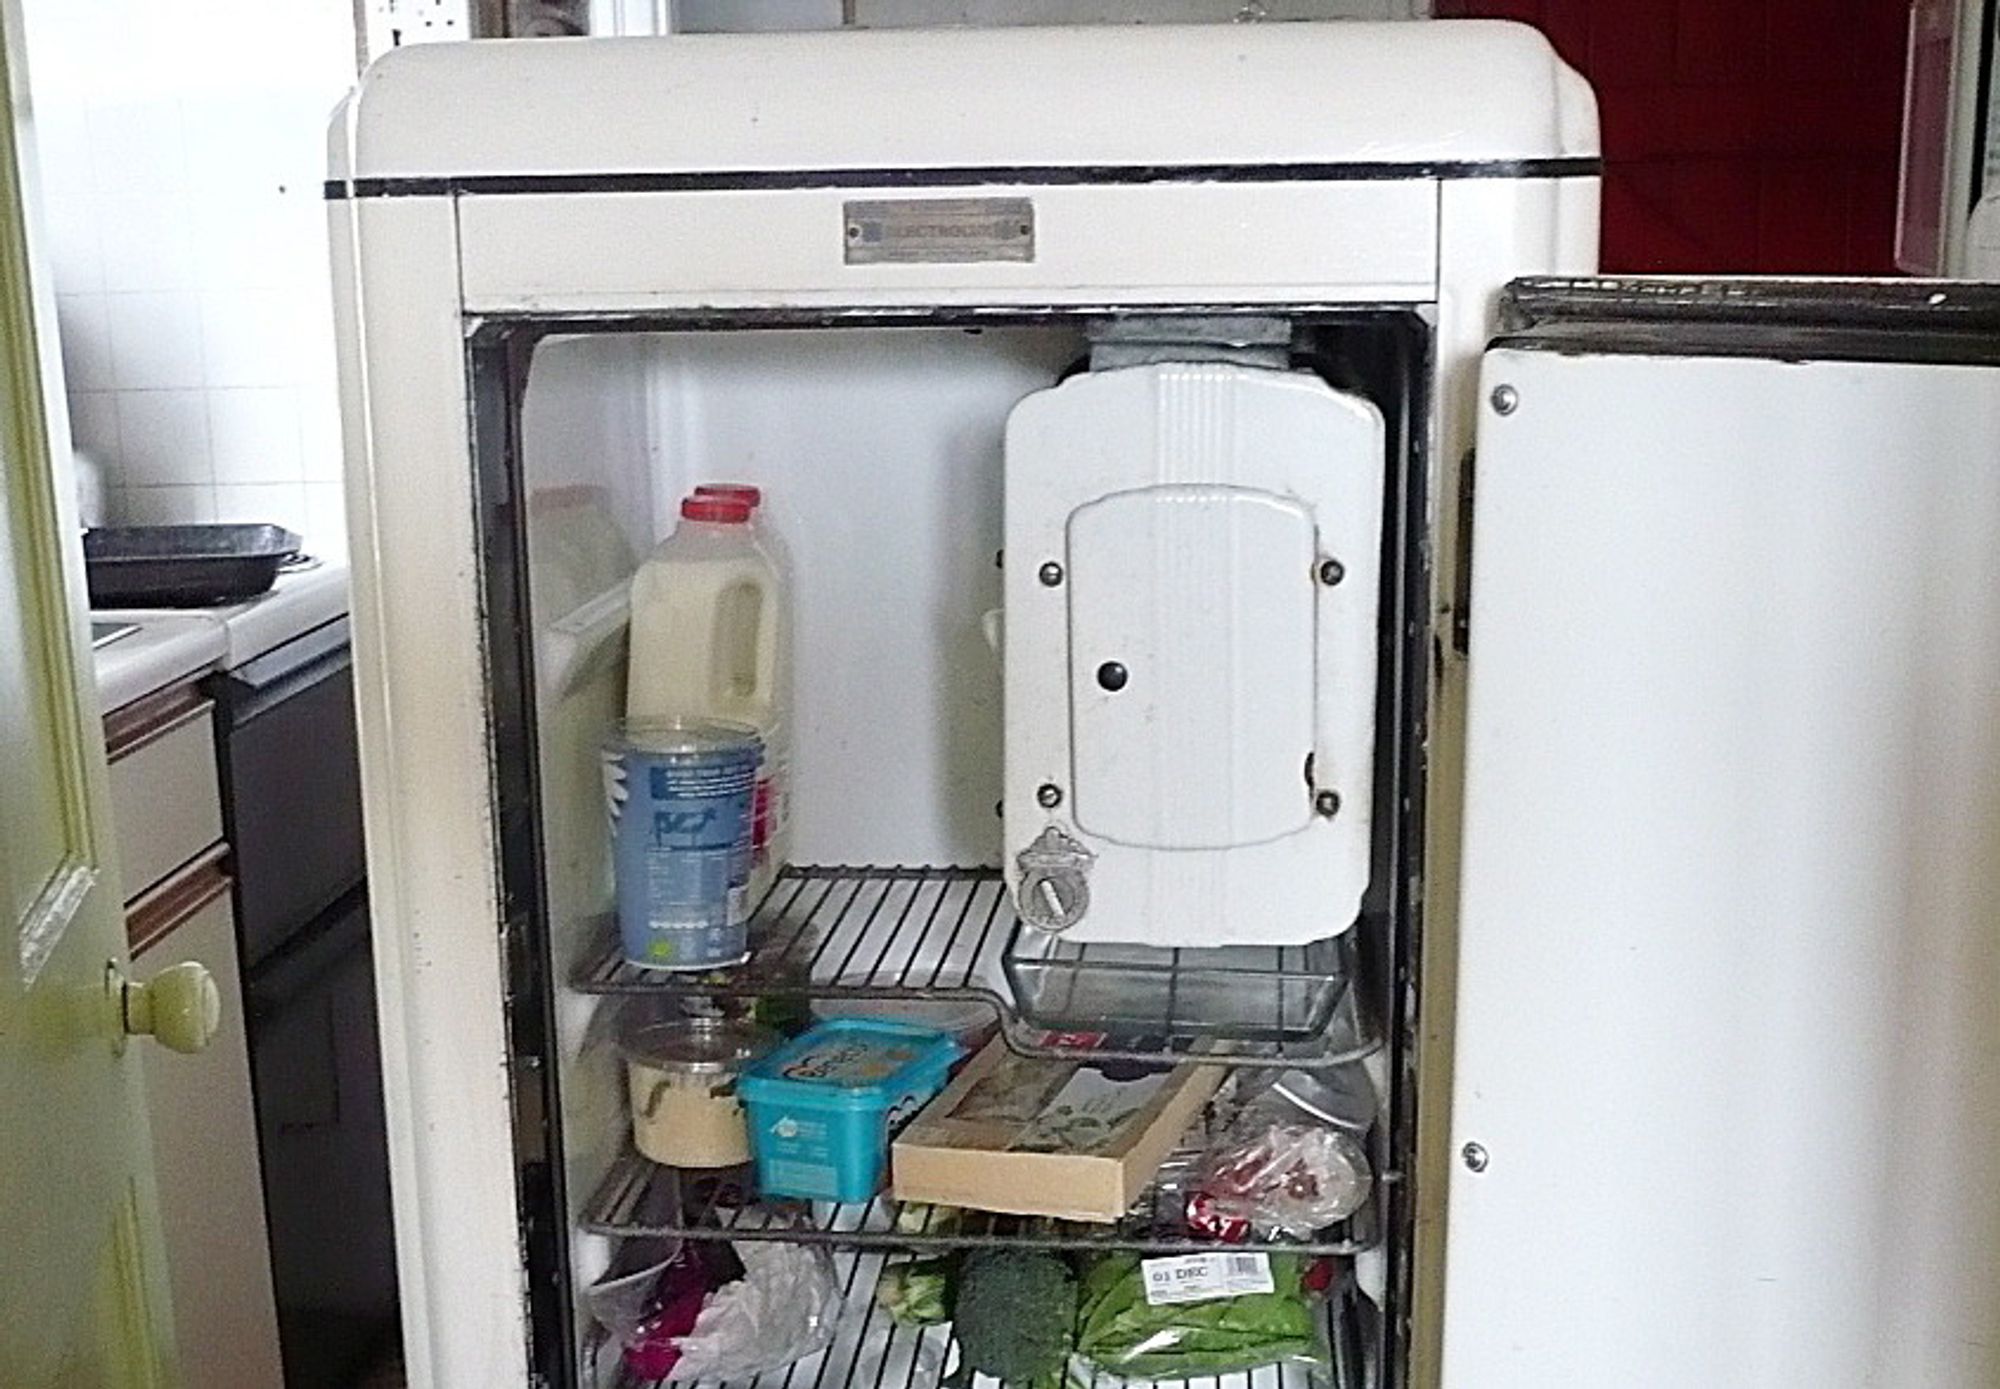 ELEKTROLUX L380: Verdens eldste fungerende kjøleskap?